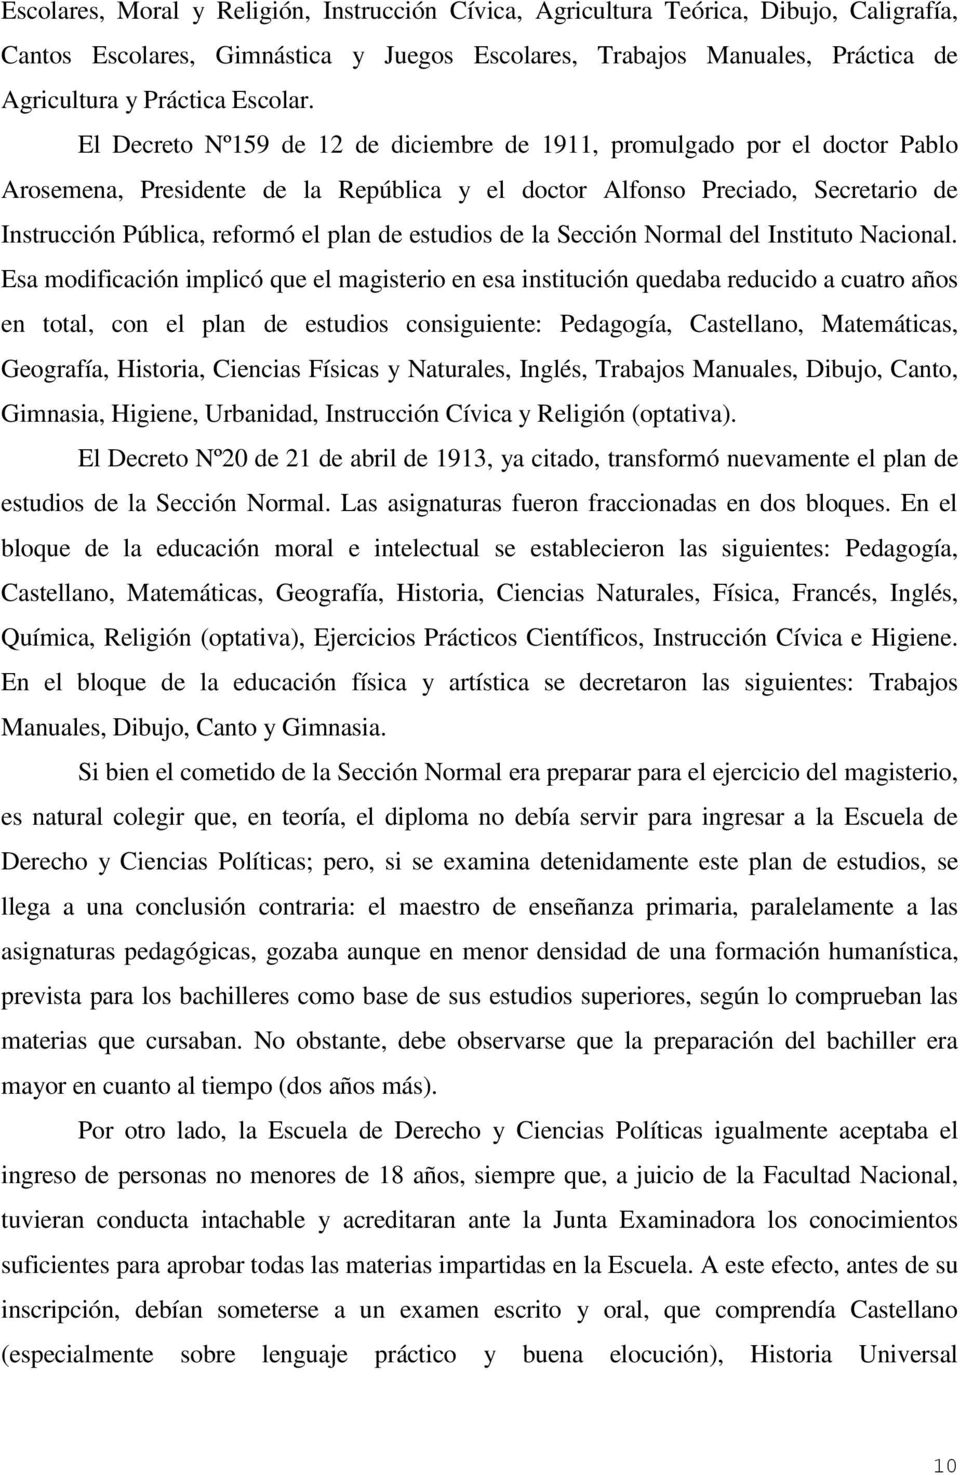 El Decreto Nº159 de 12 de diciembre de 1911, promulgado por el doctor Pablo Arosemena, Presidente de la República y el doctor Alfonso Preciado, Secretario de Instrucción Pública, reformó el plan de